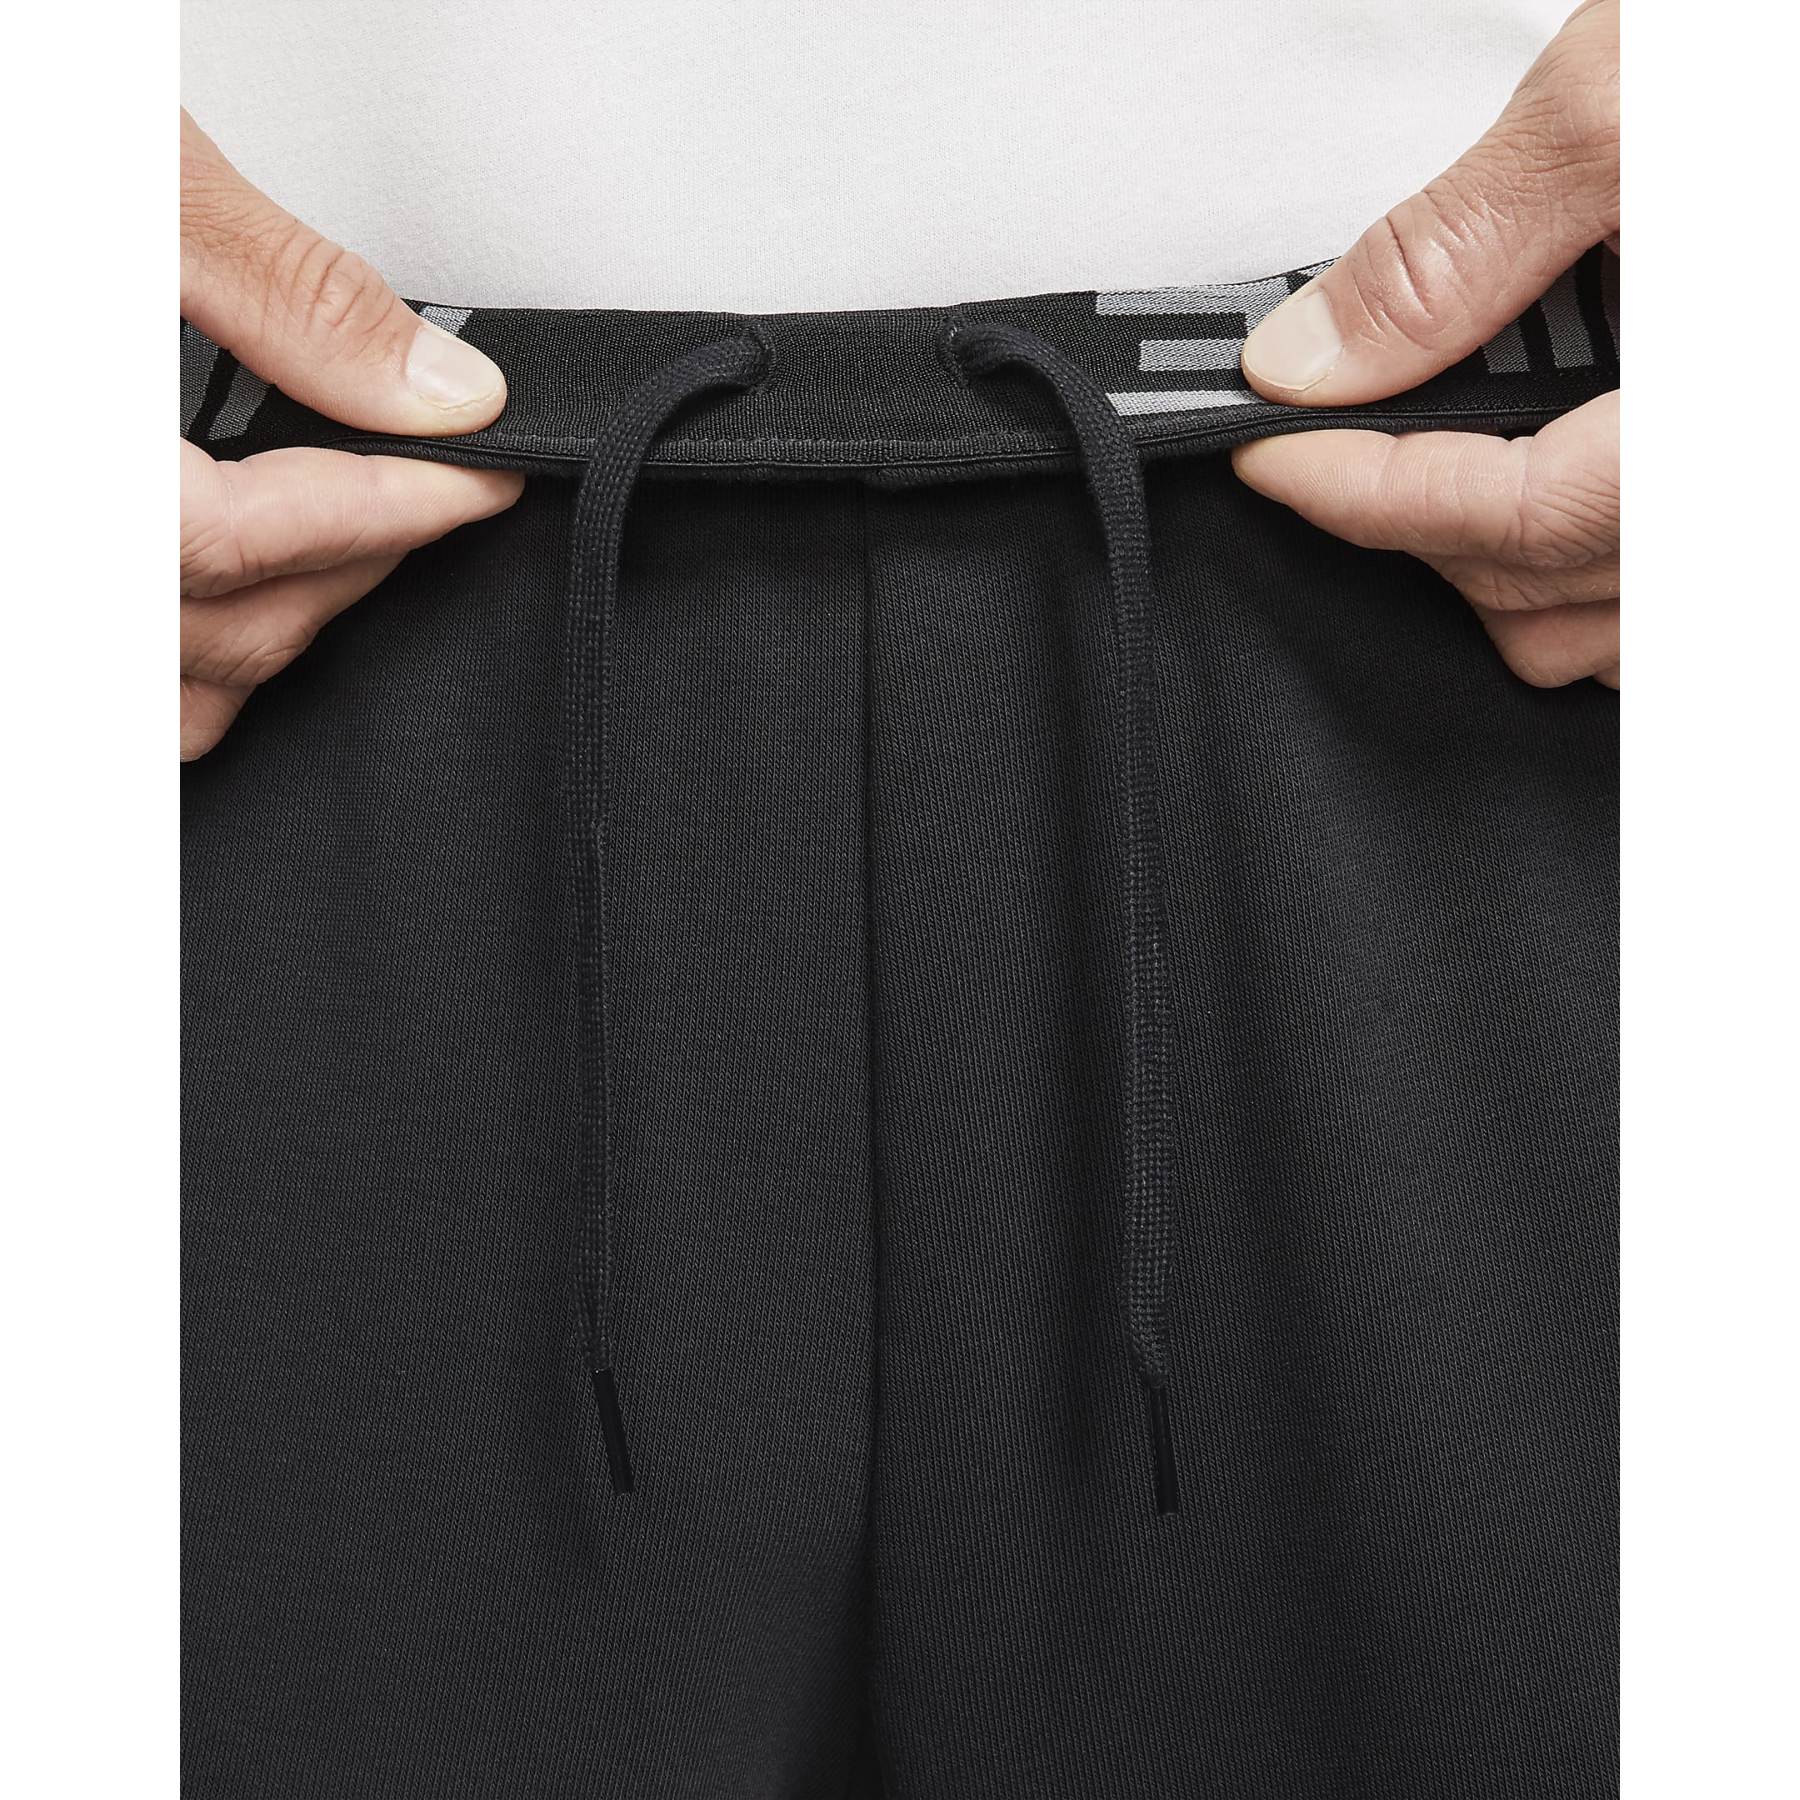 Buy Nike Dri-FIT Repel 5-Pocket Slim Fit Pants | Golf Discount